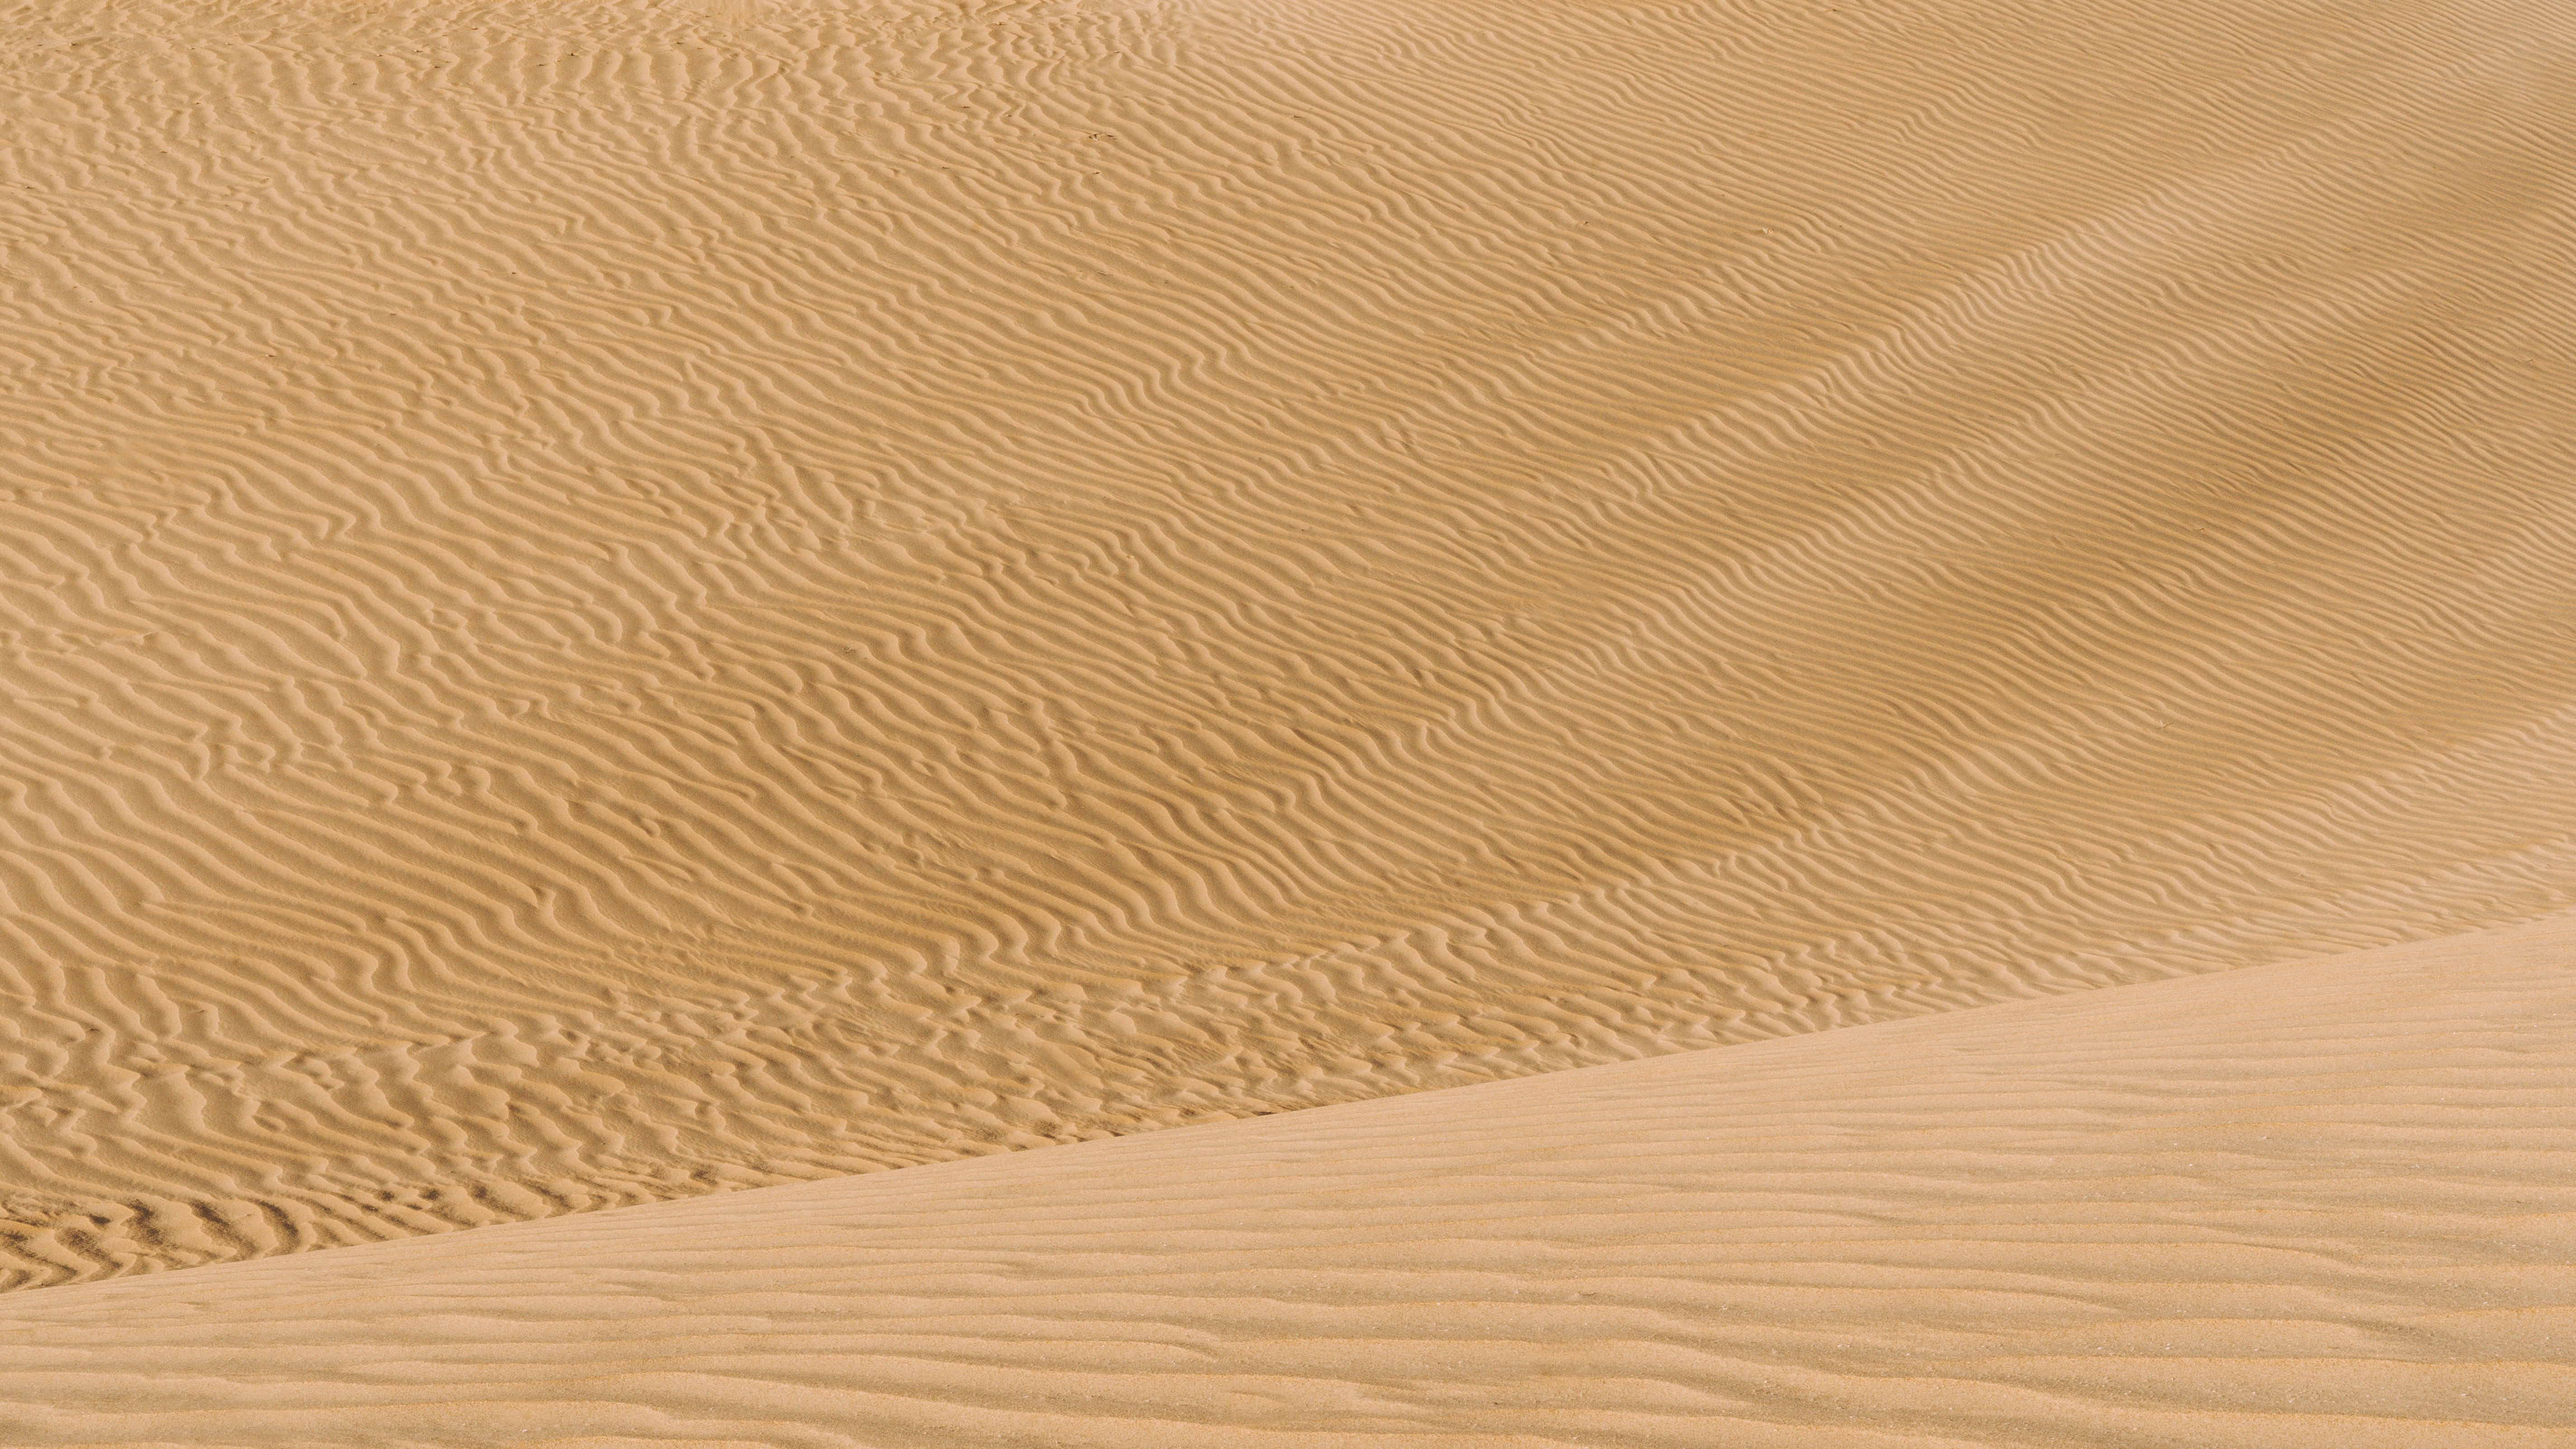 dunes, nature, sand, desert, wavy